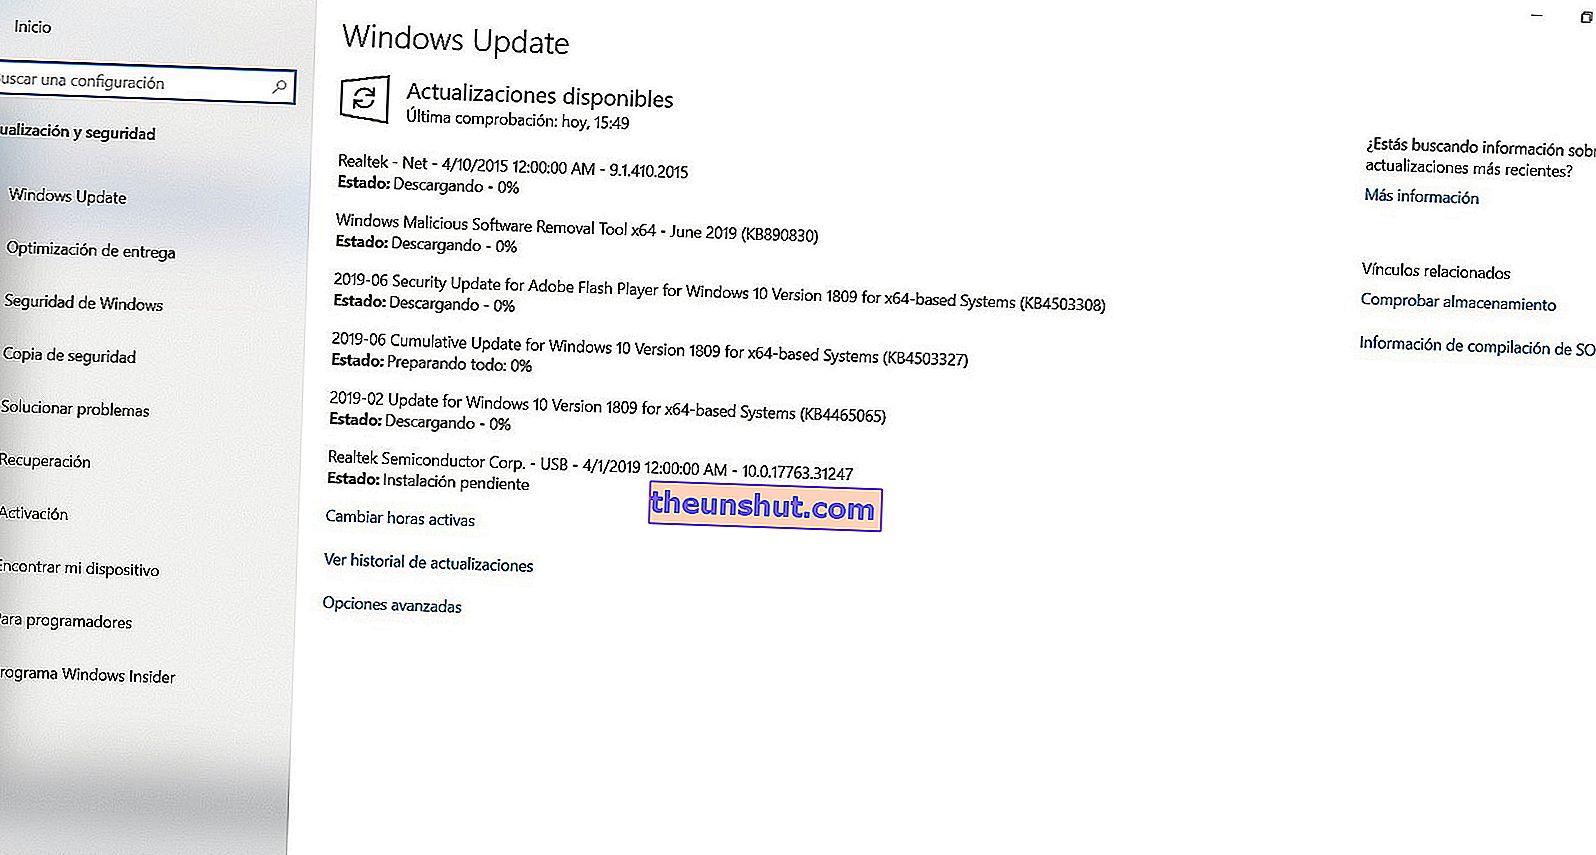 Frissítse az alaplap illesztőprogramjait a Windows Update 2-vel